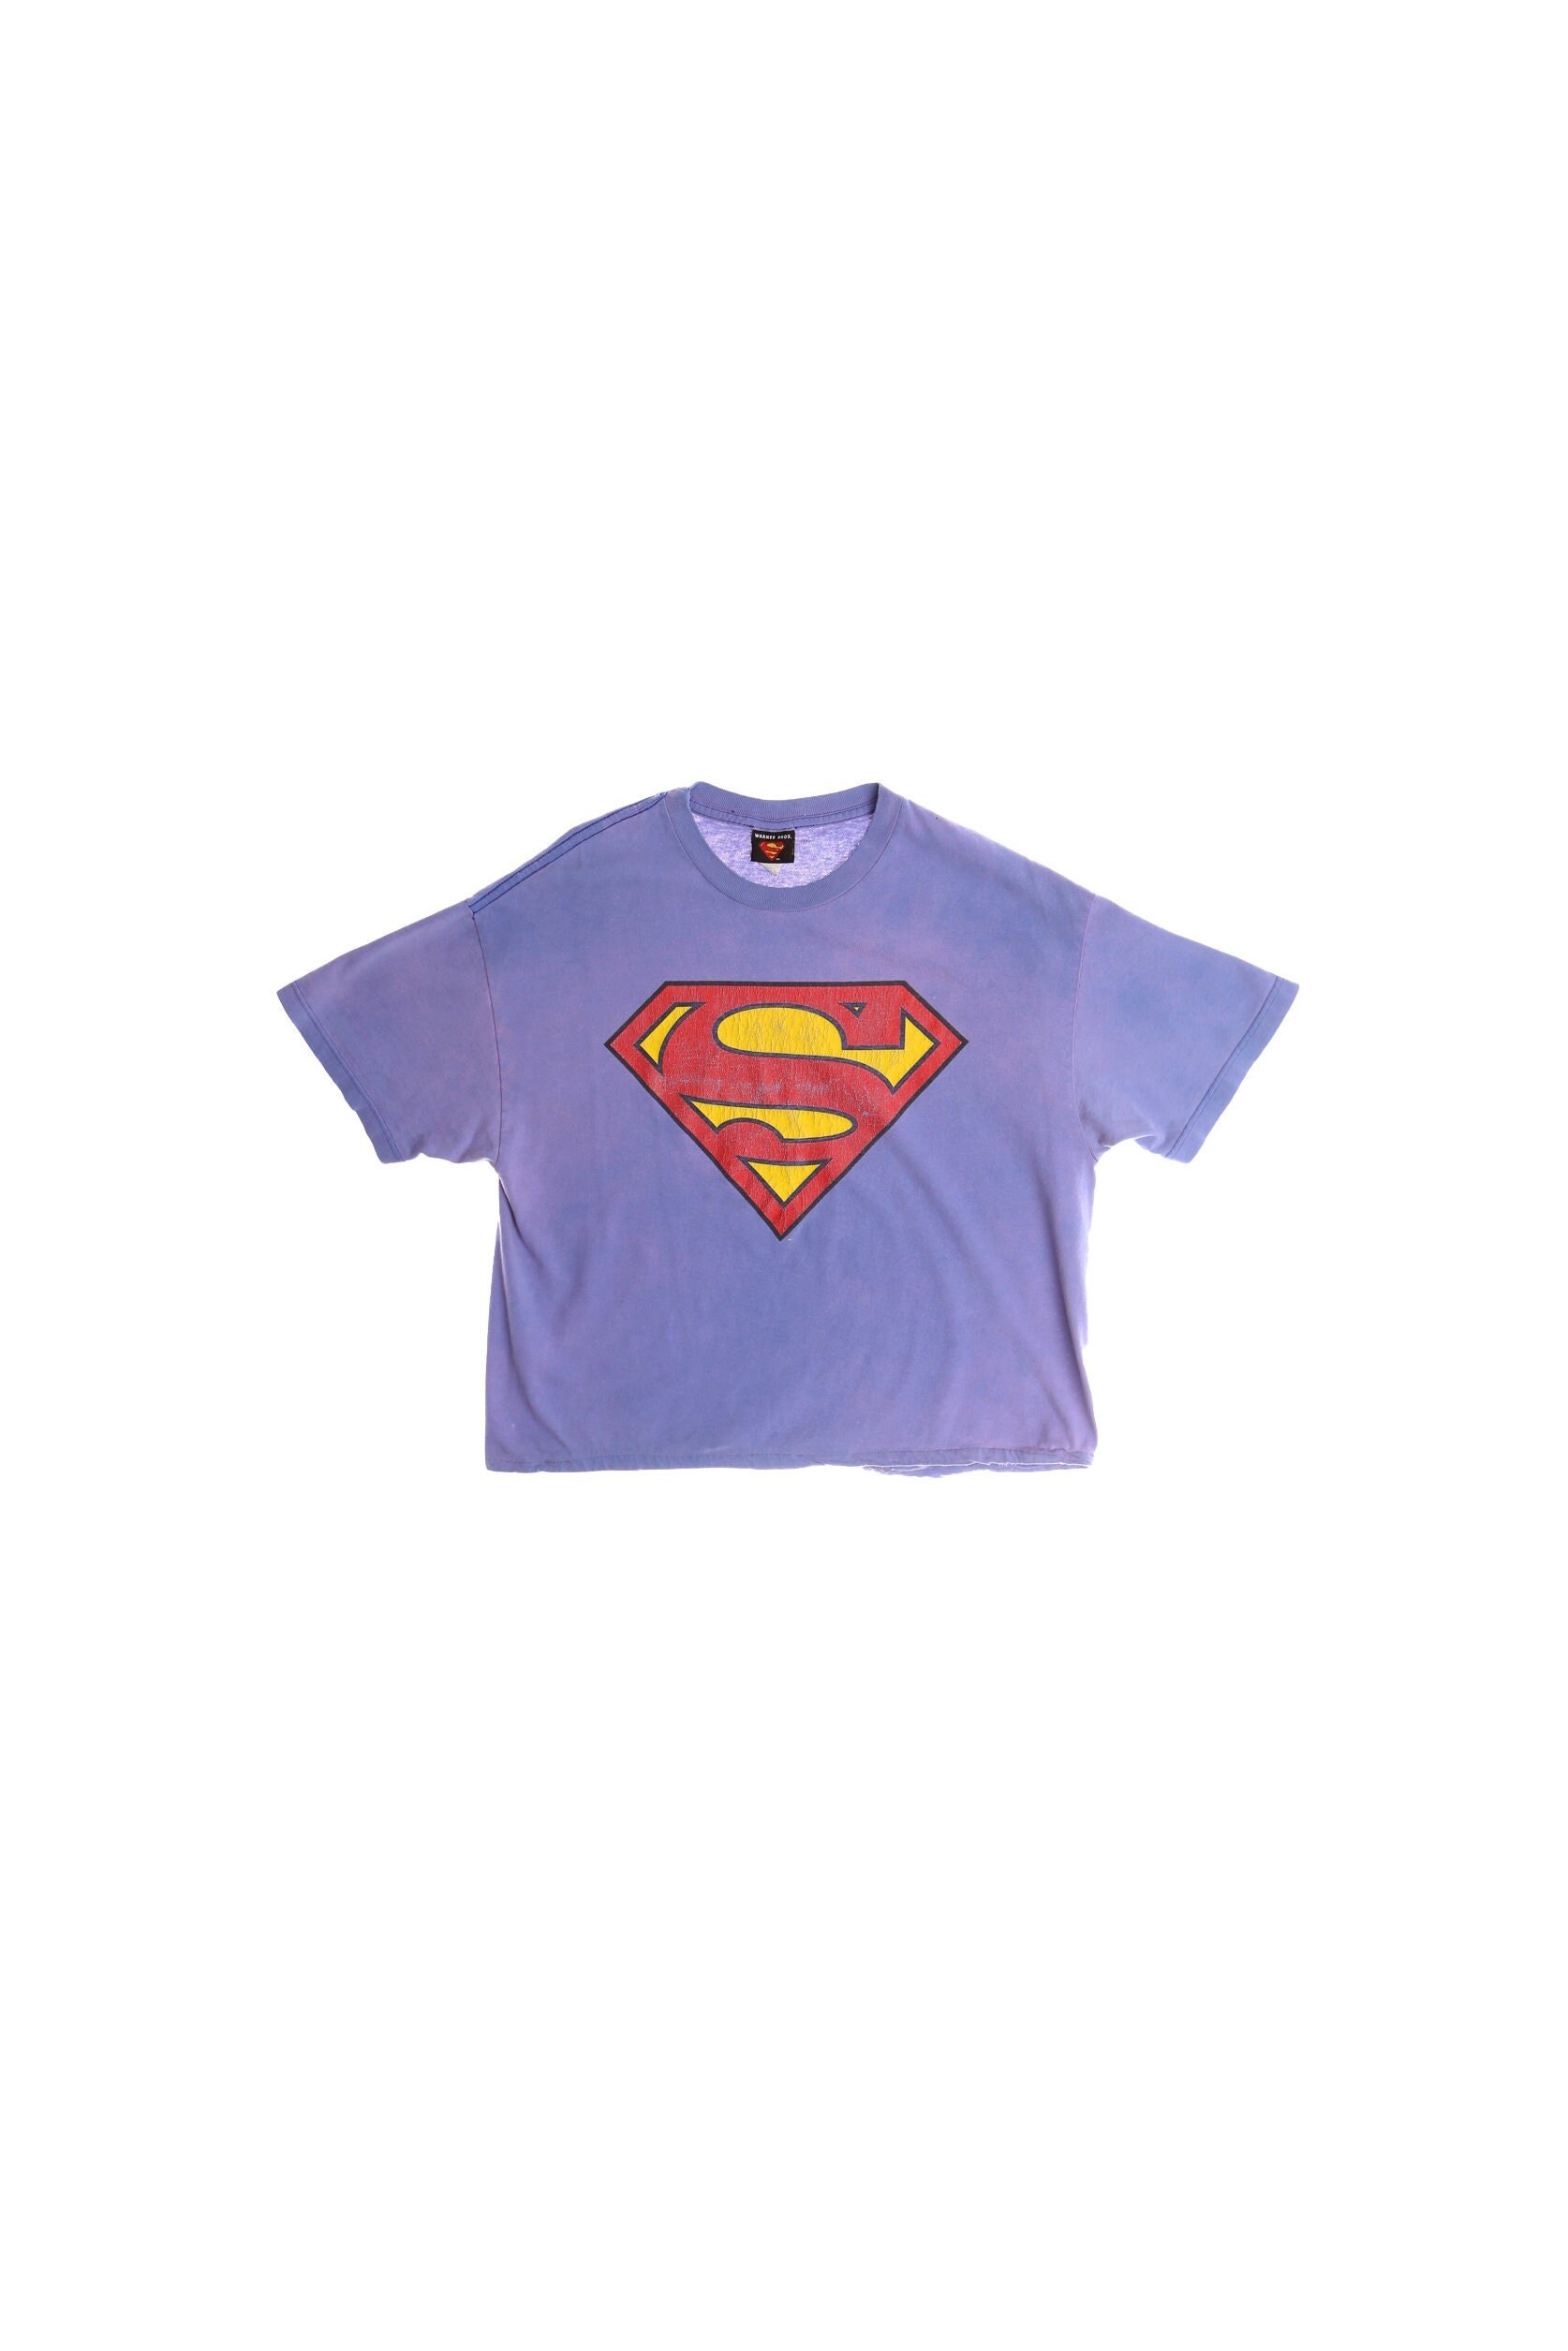 Meningsfuld Strædet thong mager Superman Print Purple Graphic T-shirt - Etsy Sweden